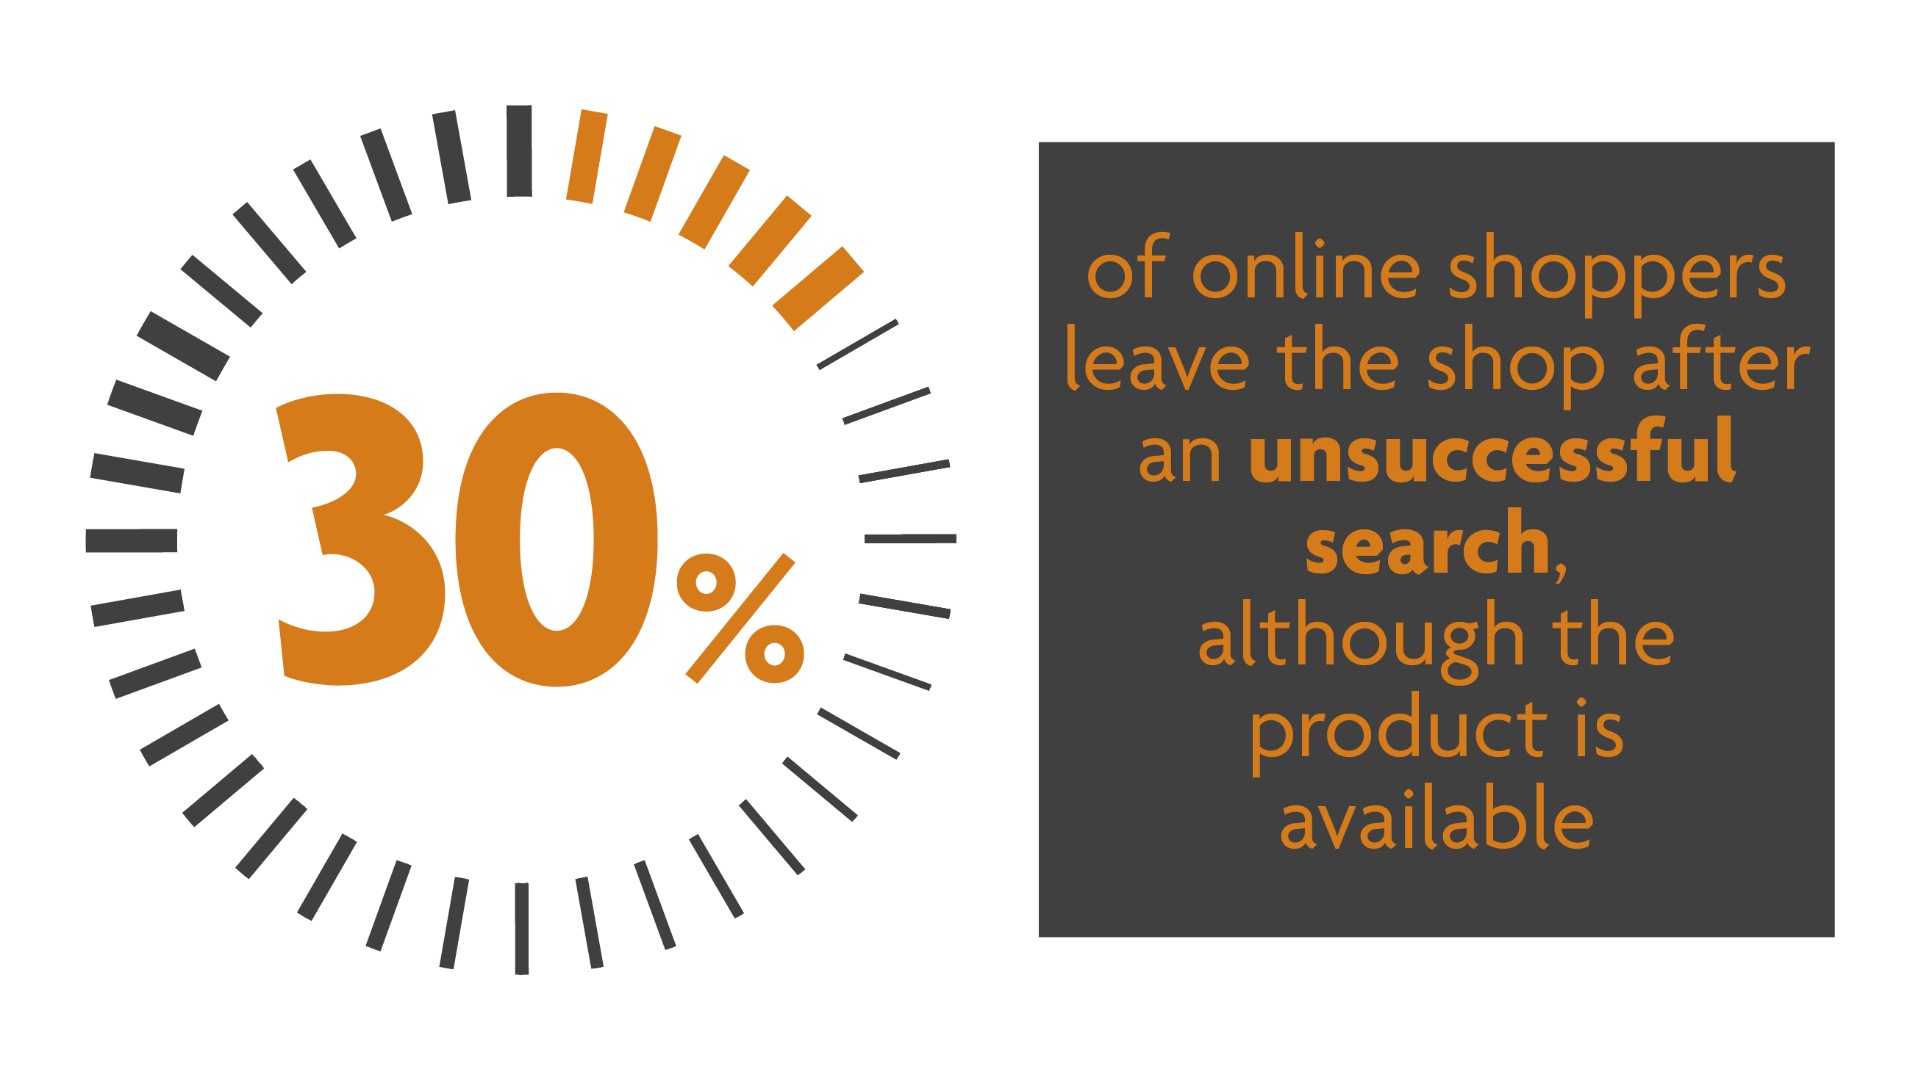 El 30% de los compradores online abandonan la tienda tras una búsqueda infructuosa, aunque el producto esté disponible